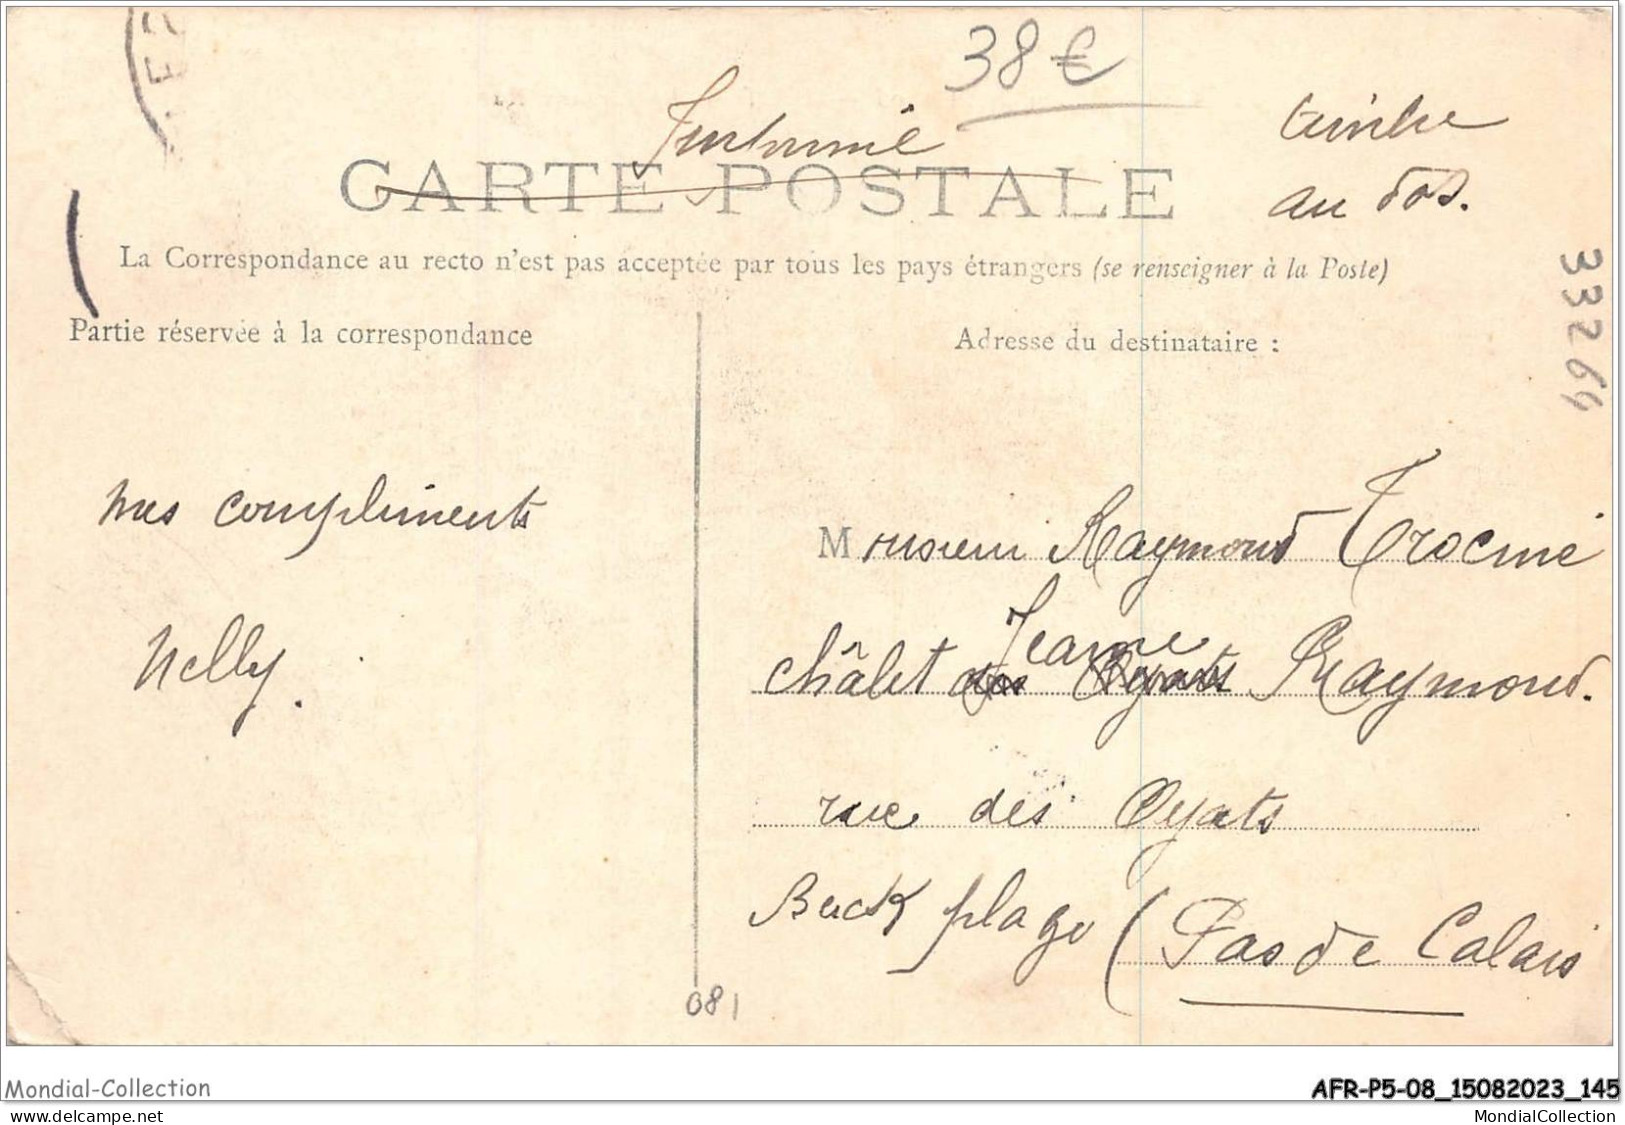 AFRP5-08-0408 - Cyclone Du 9 Août 1905 - ILLY - La Grande Rue - Autres & Non Classés